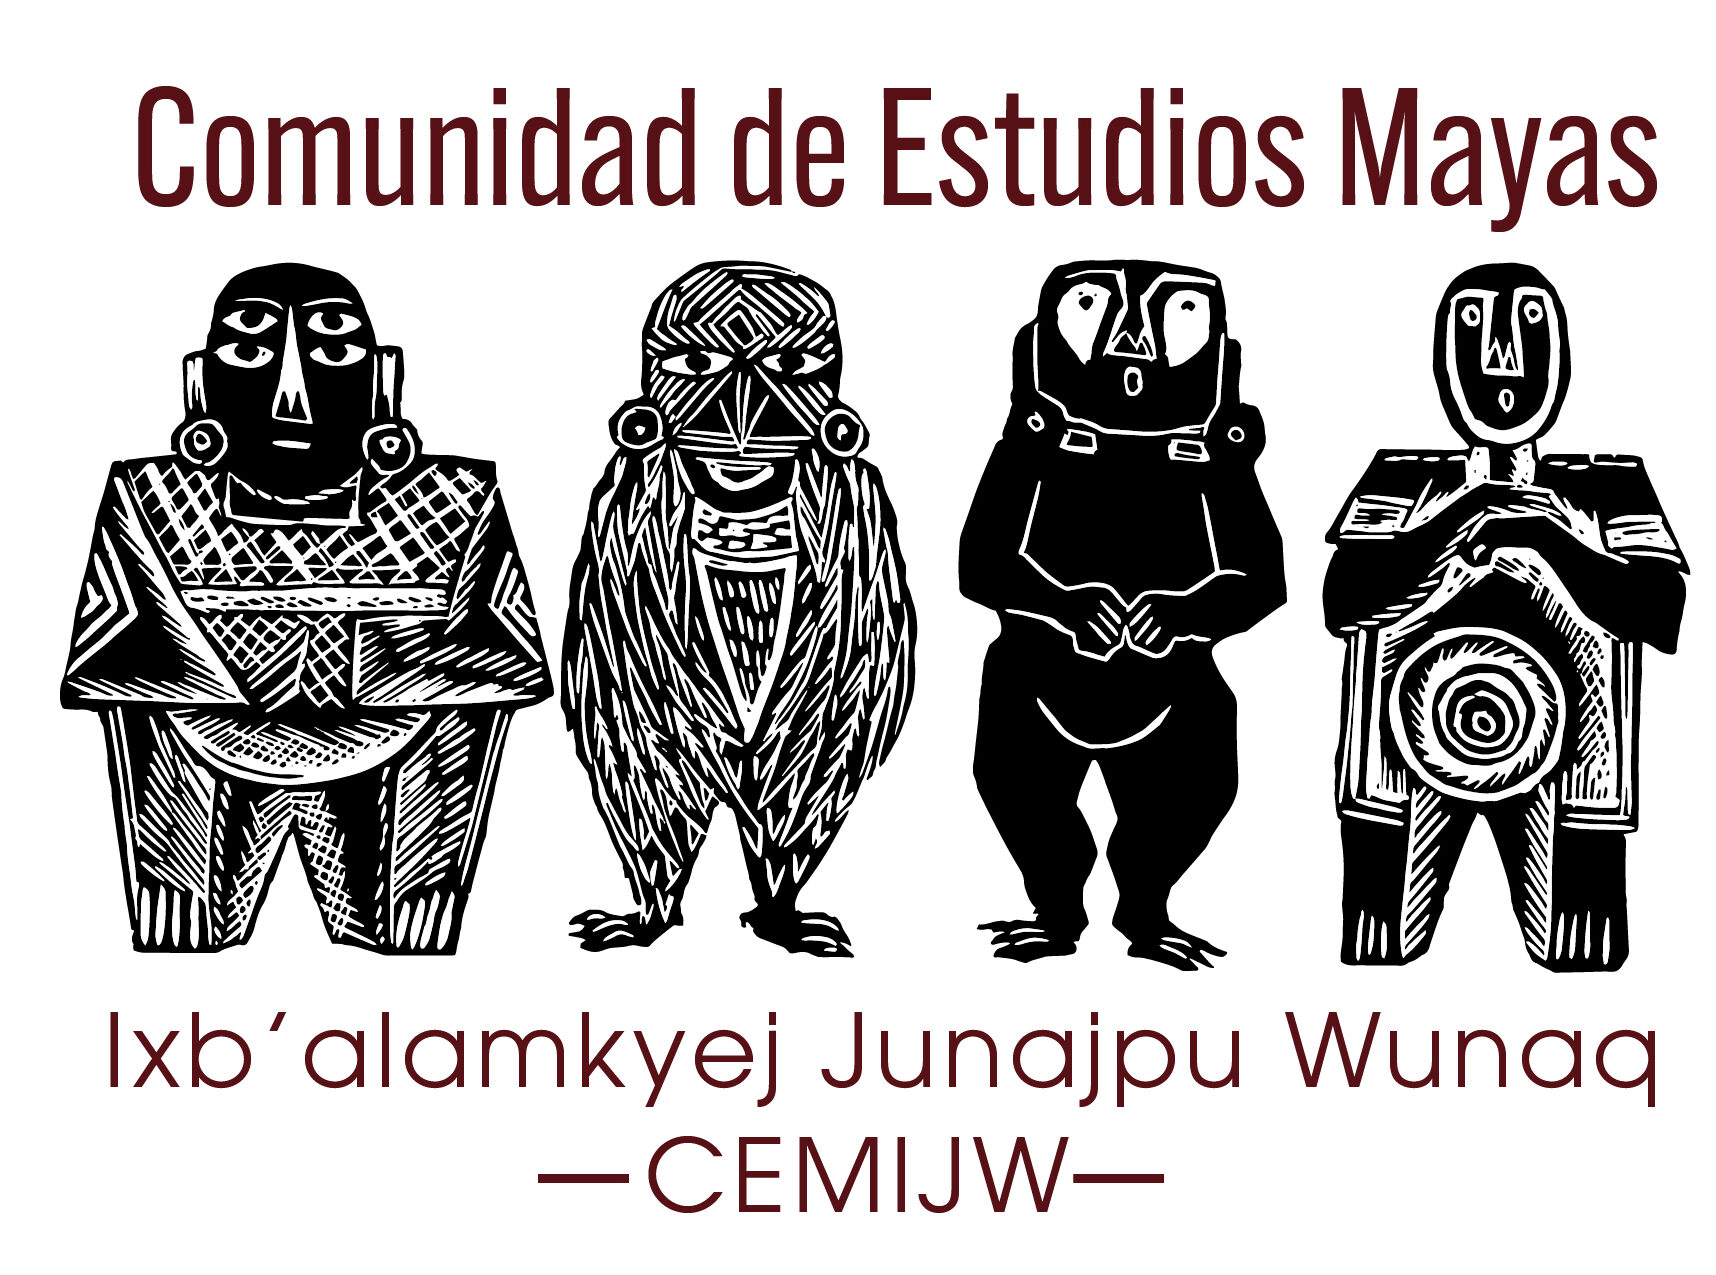 Comunidad de Estudios Mayas -CEMIJW-